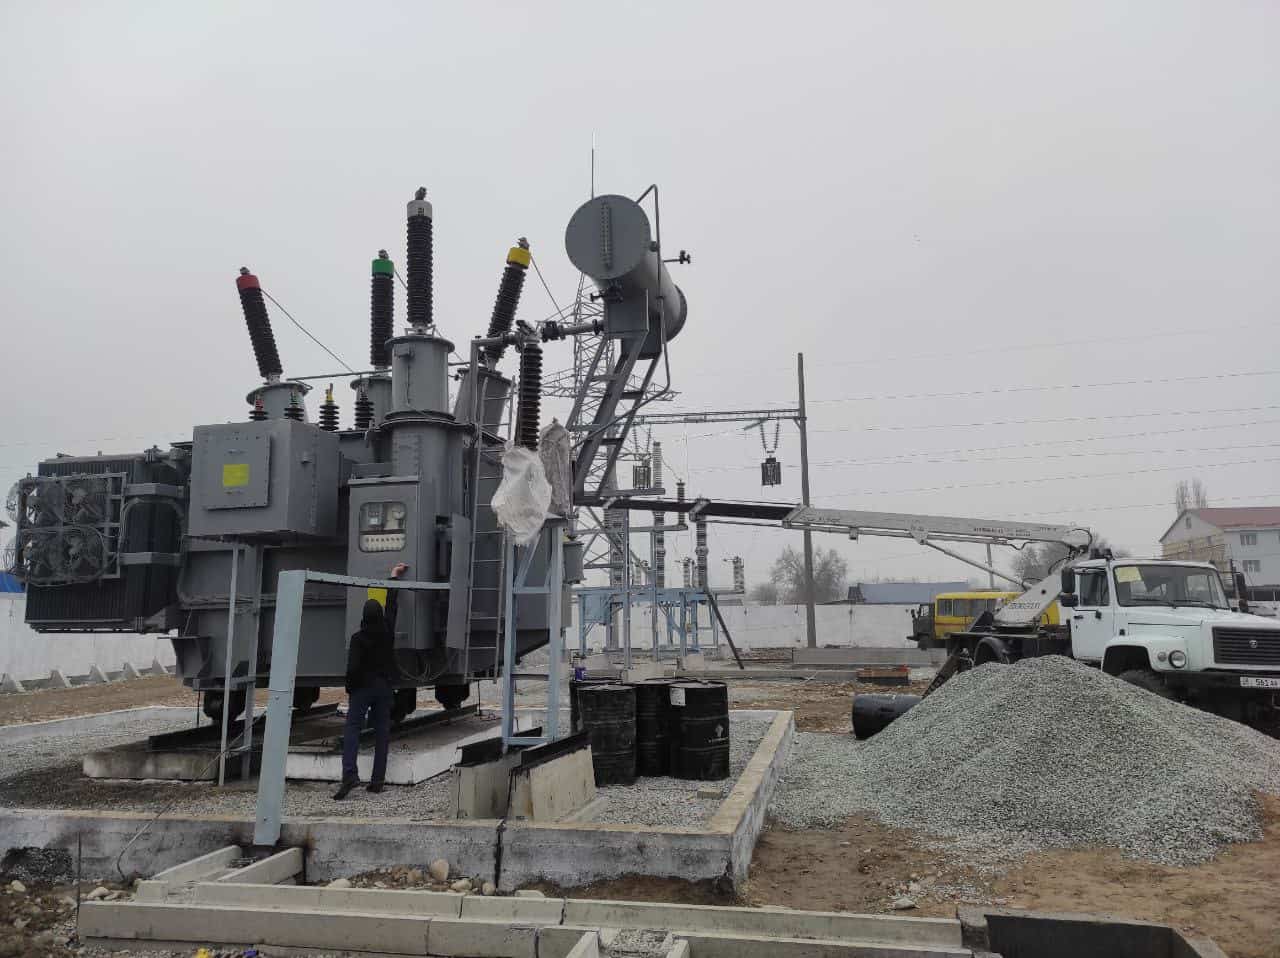 За первую половину января из РК поставлено 96 млн кВтч электроэнергии — Минэнерго